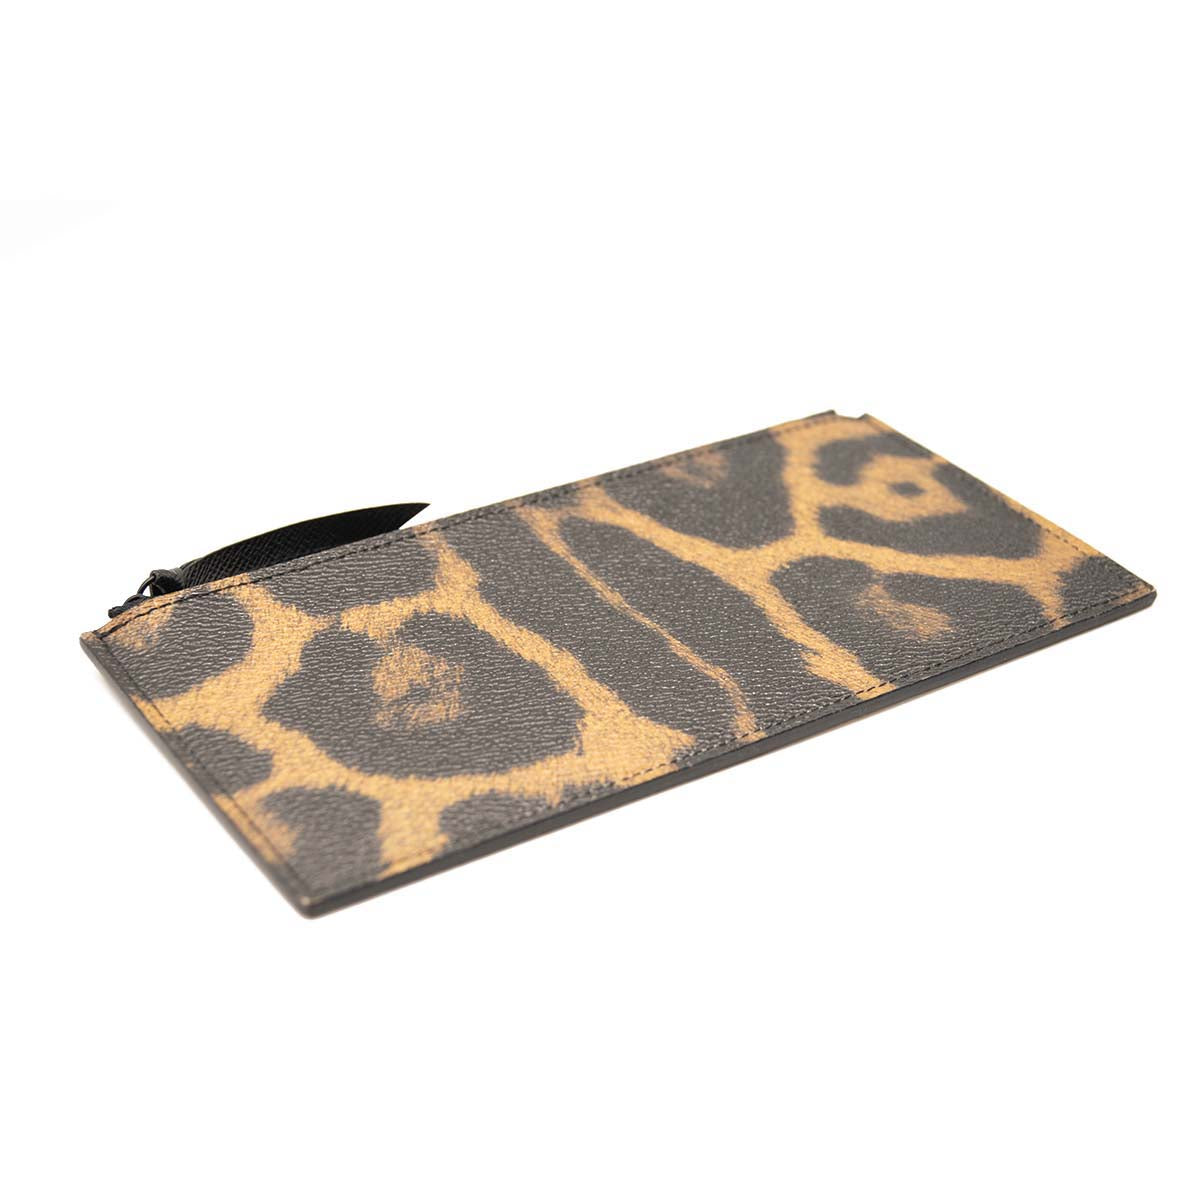 LOUIS VUITTON LV Felice Chain Shoulder Bag Monogram Leopard Brown